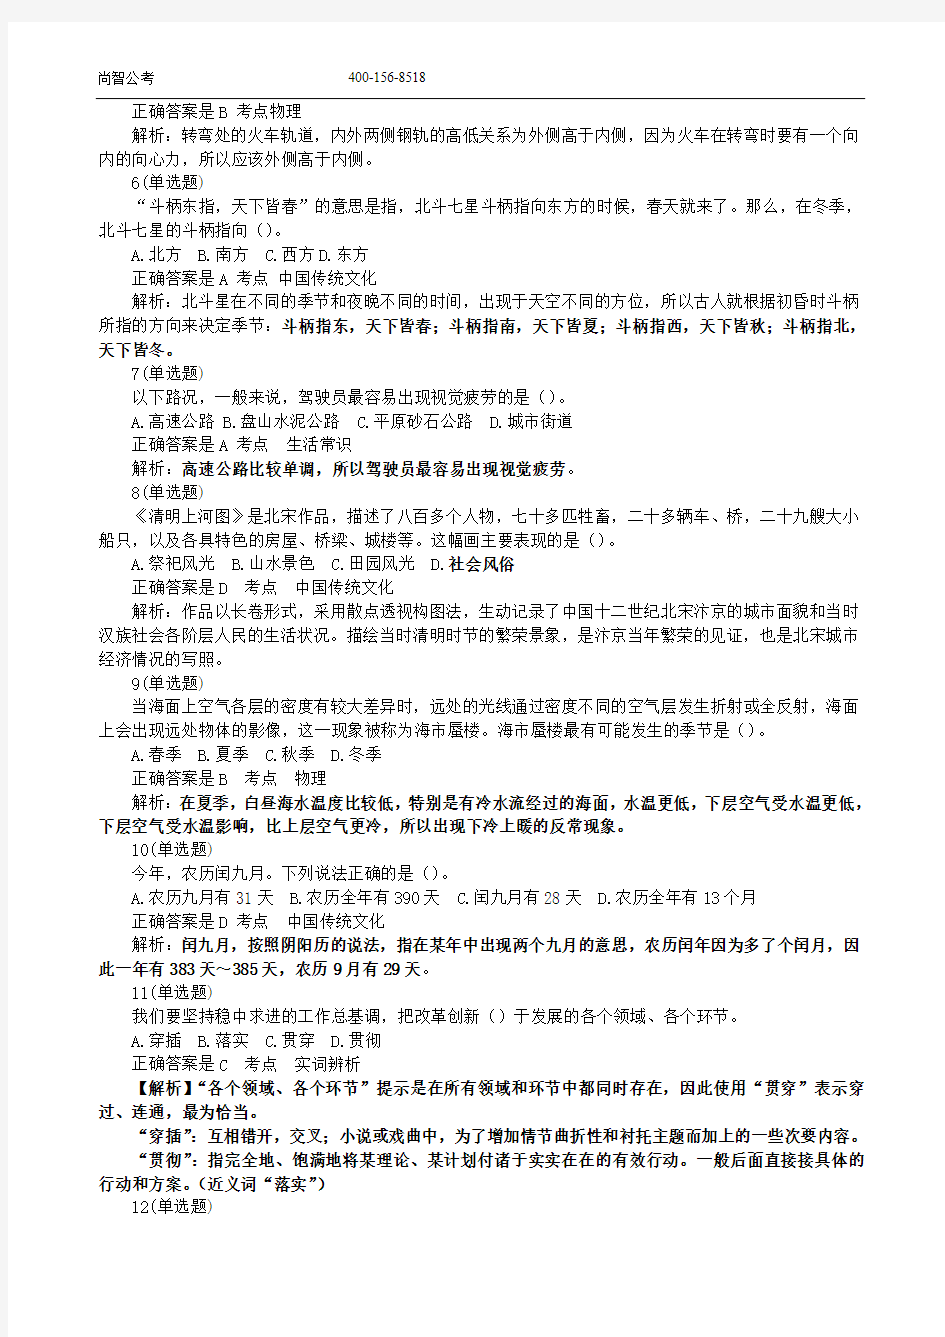 2014年广东省公务员考试行测真题及答案解析【全】